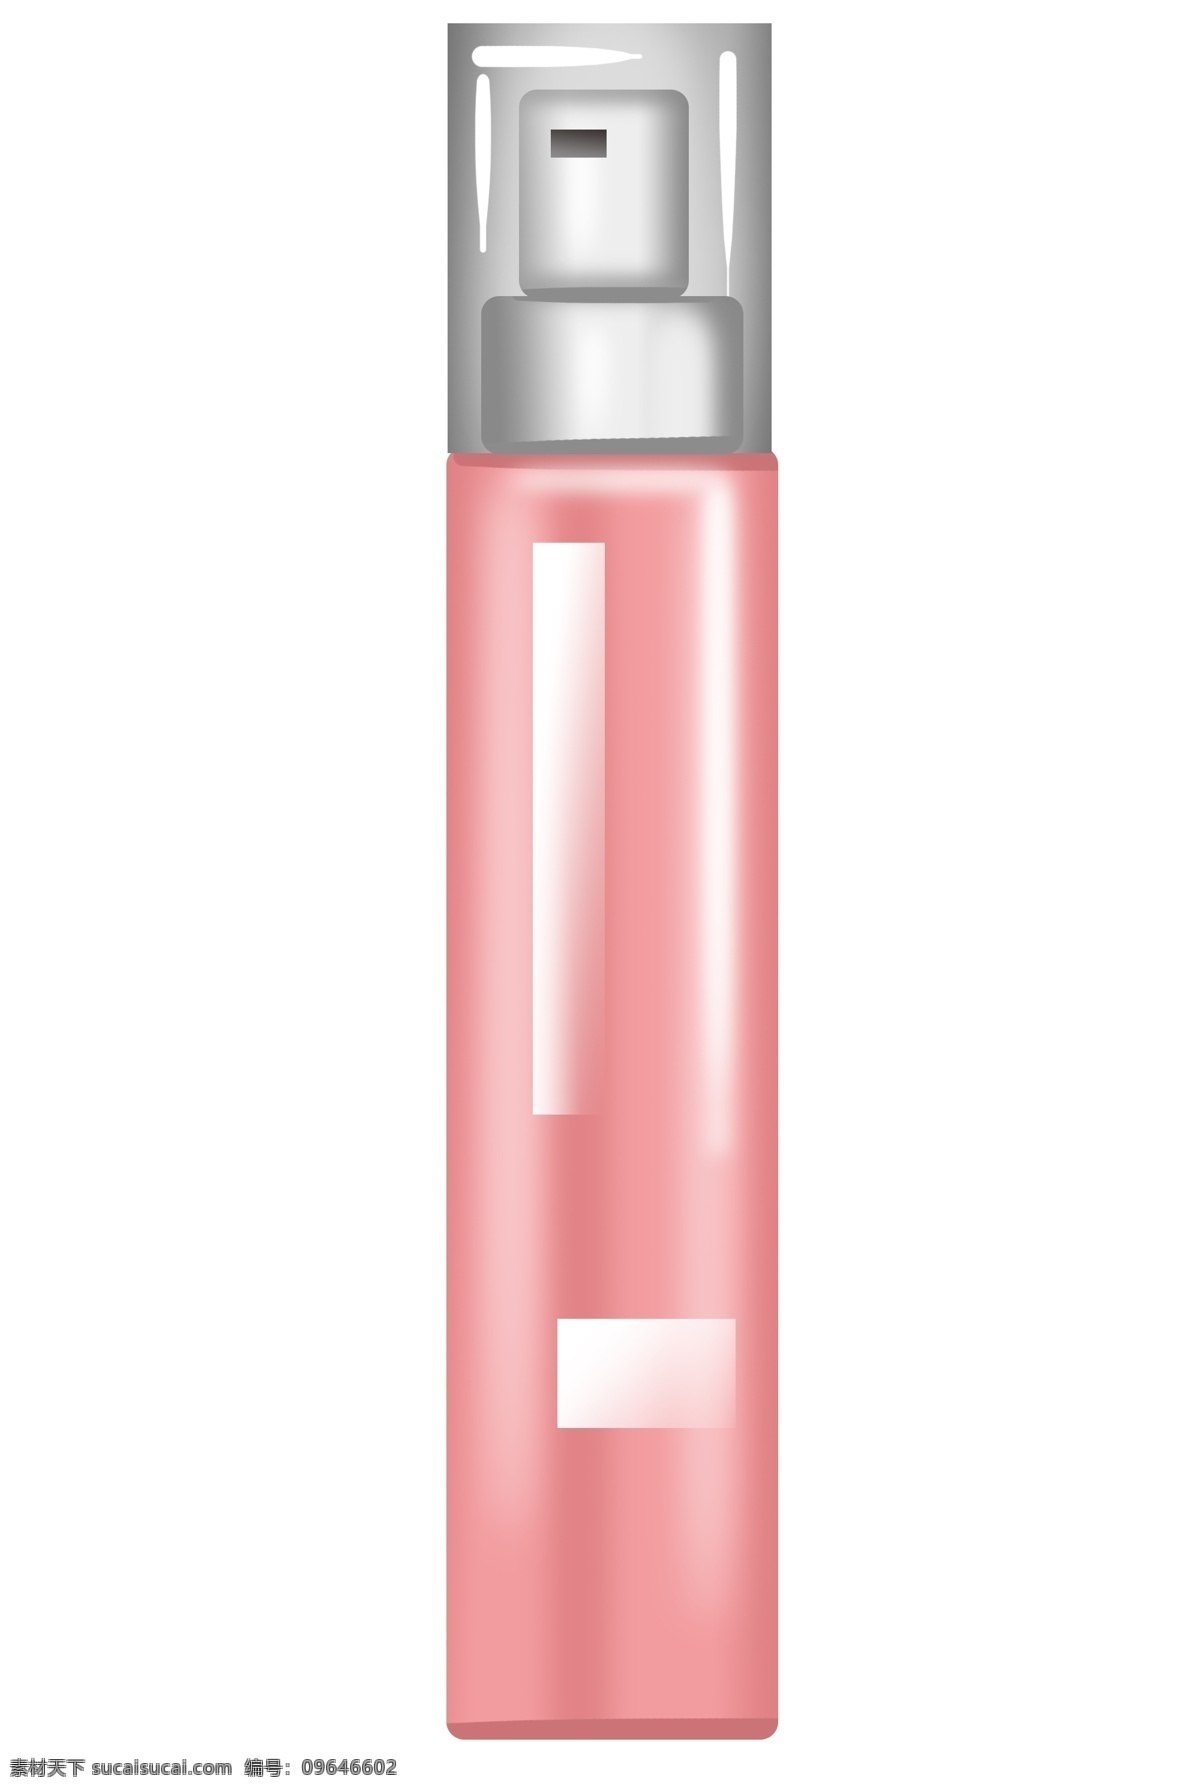 粉色 化妆品 瓶子 插画 粉色的瓶子 化妆品瓶子 手绘化妆品 美妆用品瓶子 喷雾瓶子 卡通 护肤品